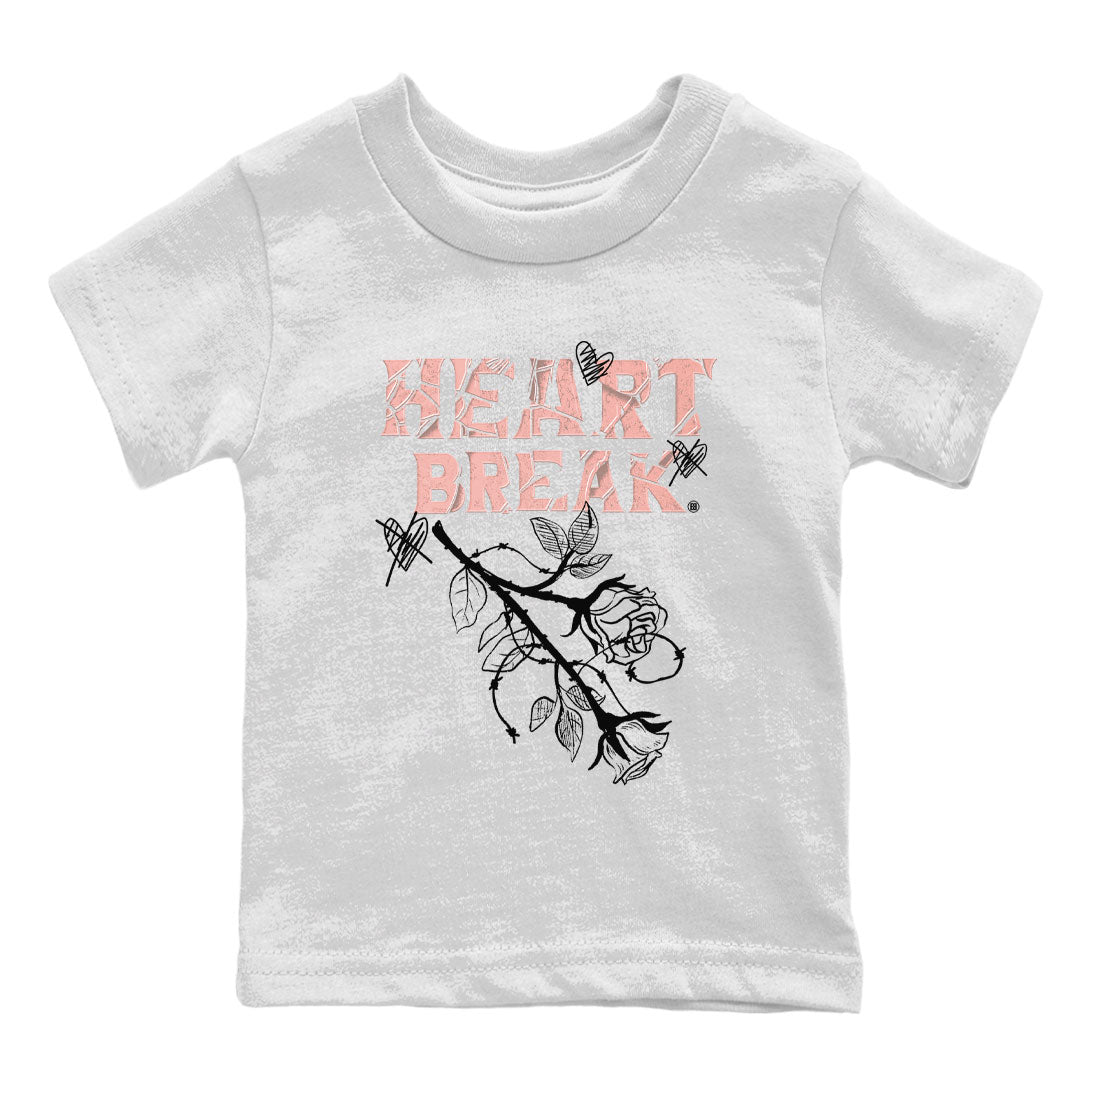 Dunk Low WMNS Rose Whisper shirt to match jordans Heart Break sneaker tees Dunk Rose Whisper SNRT Sneaker Release Tees Baby Toddler Kids White 2 T-Shirt